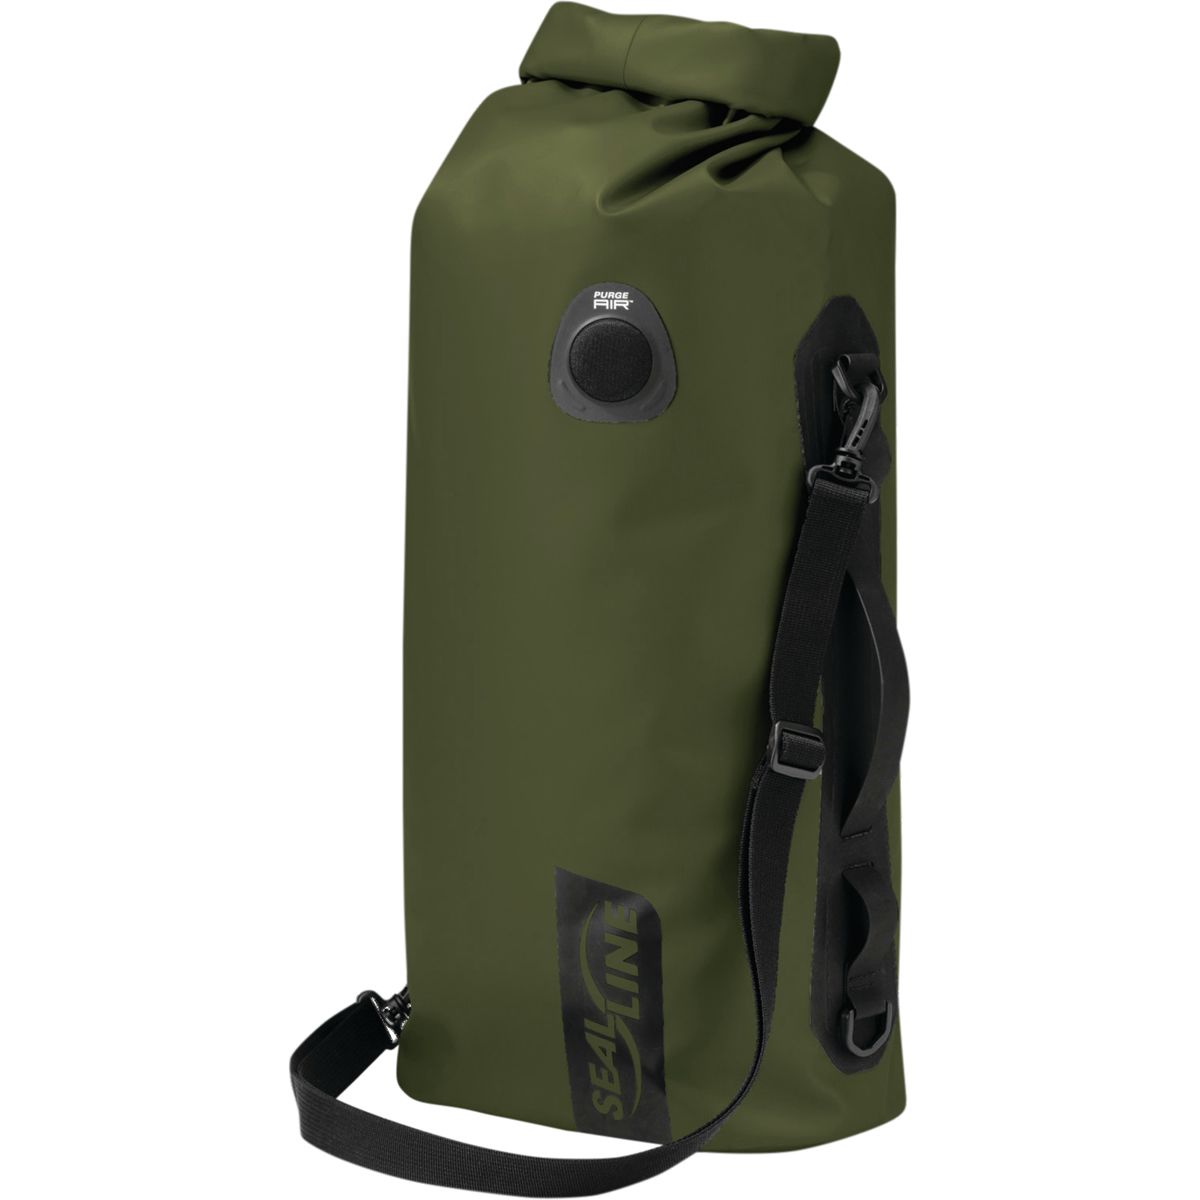 SealLine Discovery Deck Dry Bag | Backcountry.com